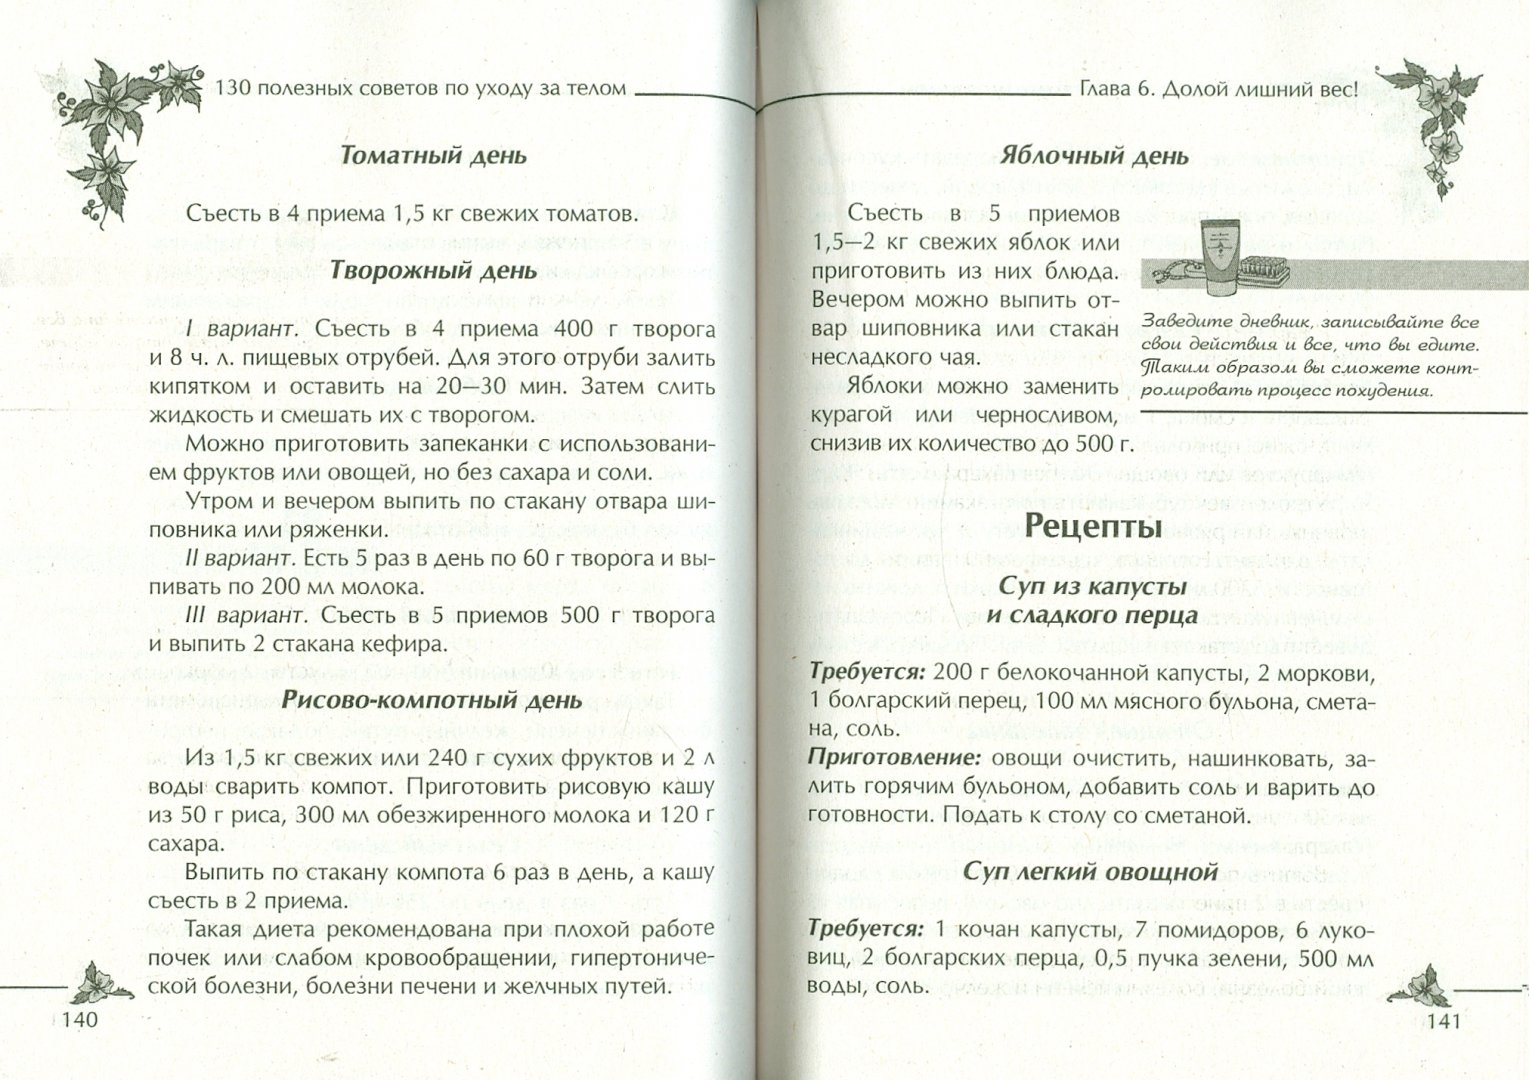 Иллюстрация 2 из 2 для 130 полезных советов по уходу за телом - Ращупкина, Гаврилова | Лабиринт - книги. Источник: Лабиринт